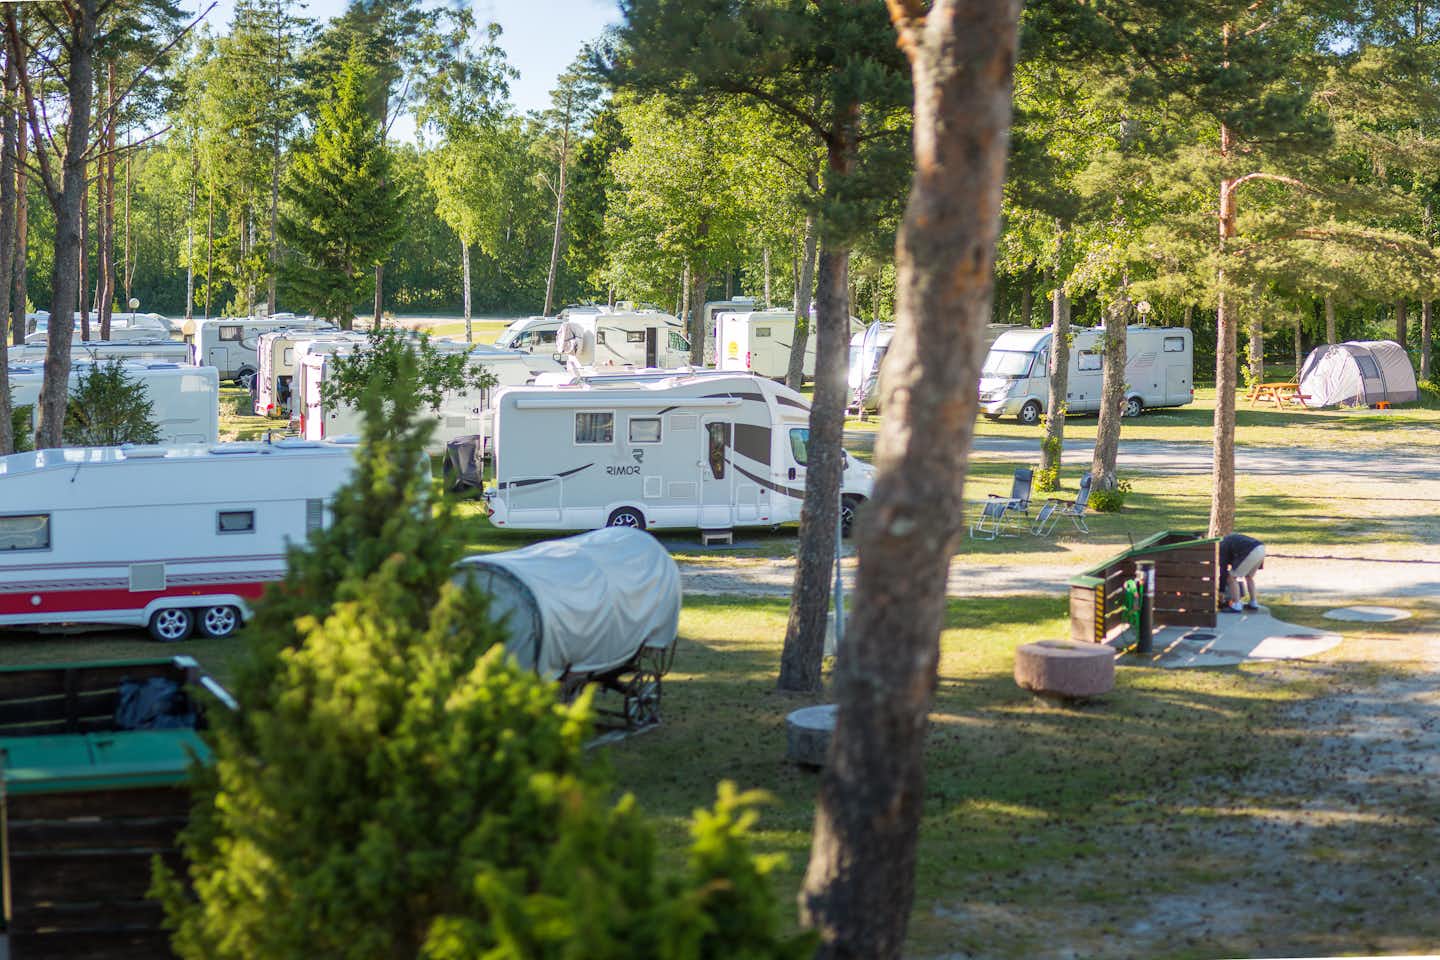 Camping Tehumardi -  Campingbereich für Zelte und Wohnwagen im Schatten der Bäume